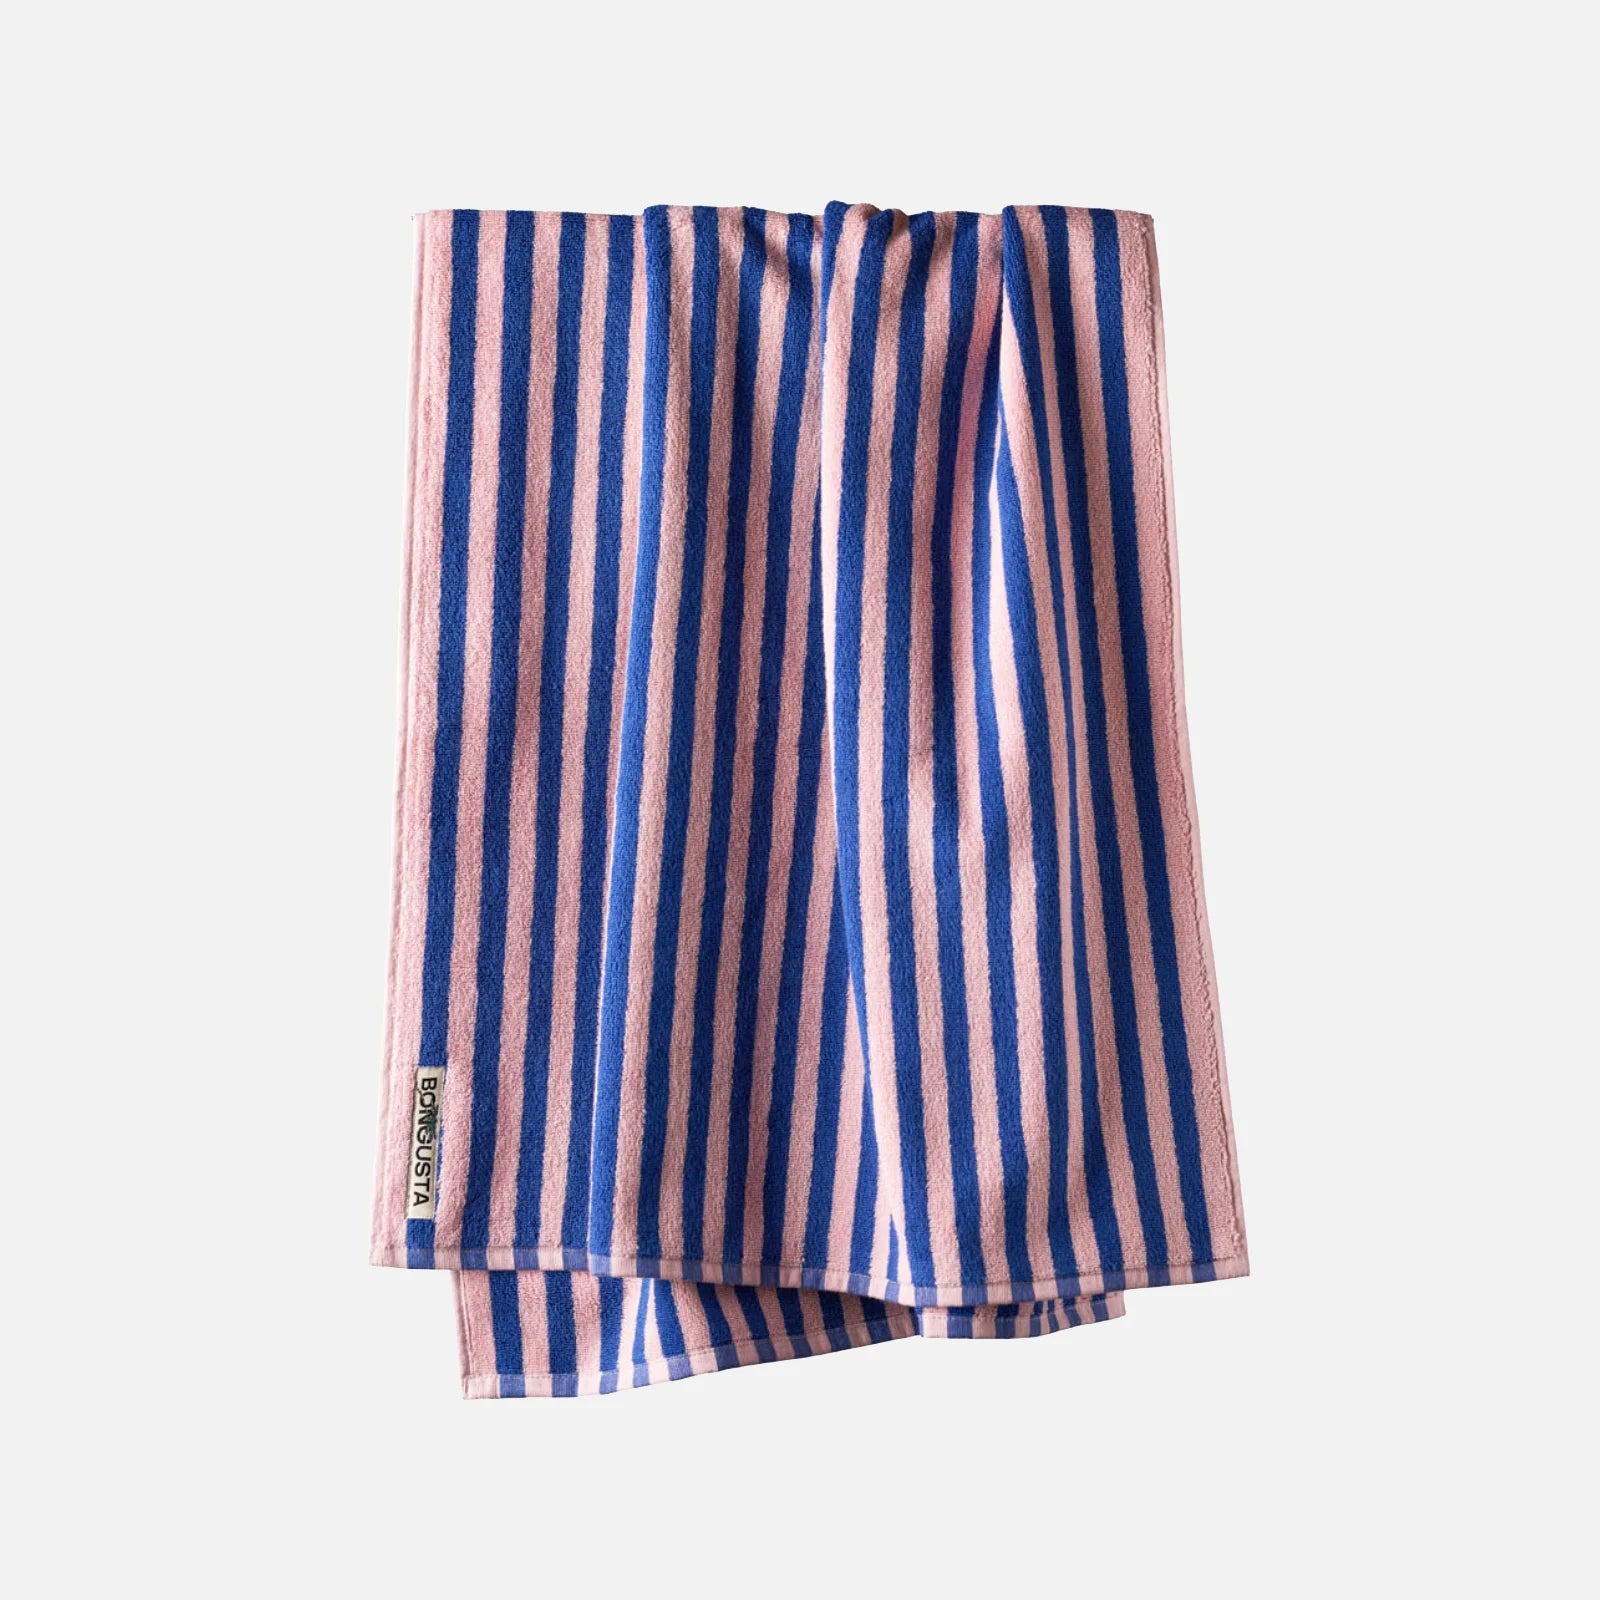 Naram håndklæder fra Bongusta i Dazzling Blue/Rose (70x140 cm)